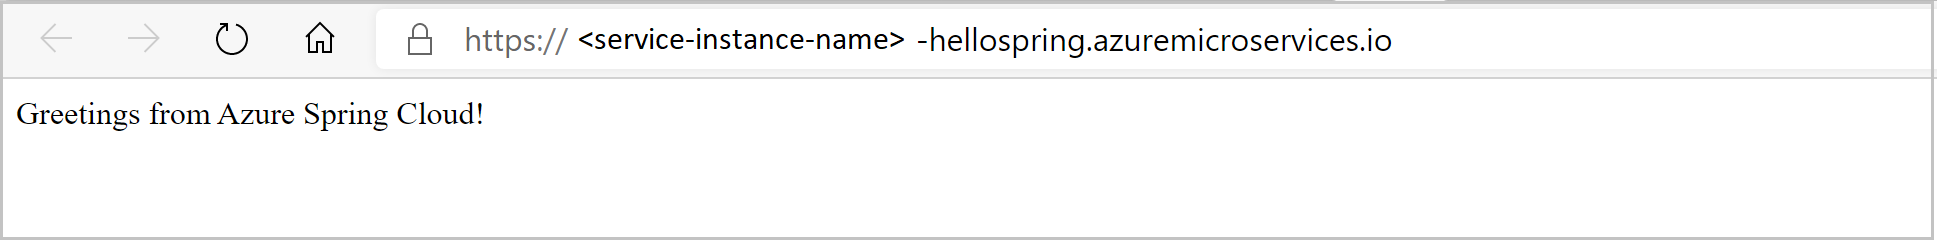 浏览器中所示的 hello spring 应用的屏幕截图。